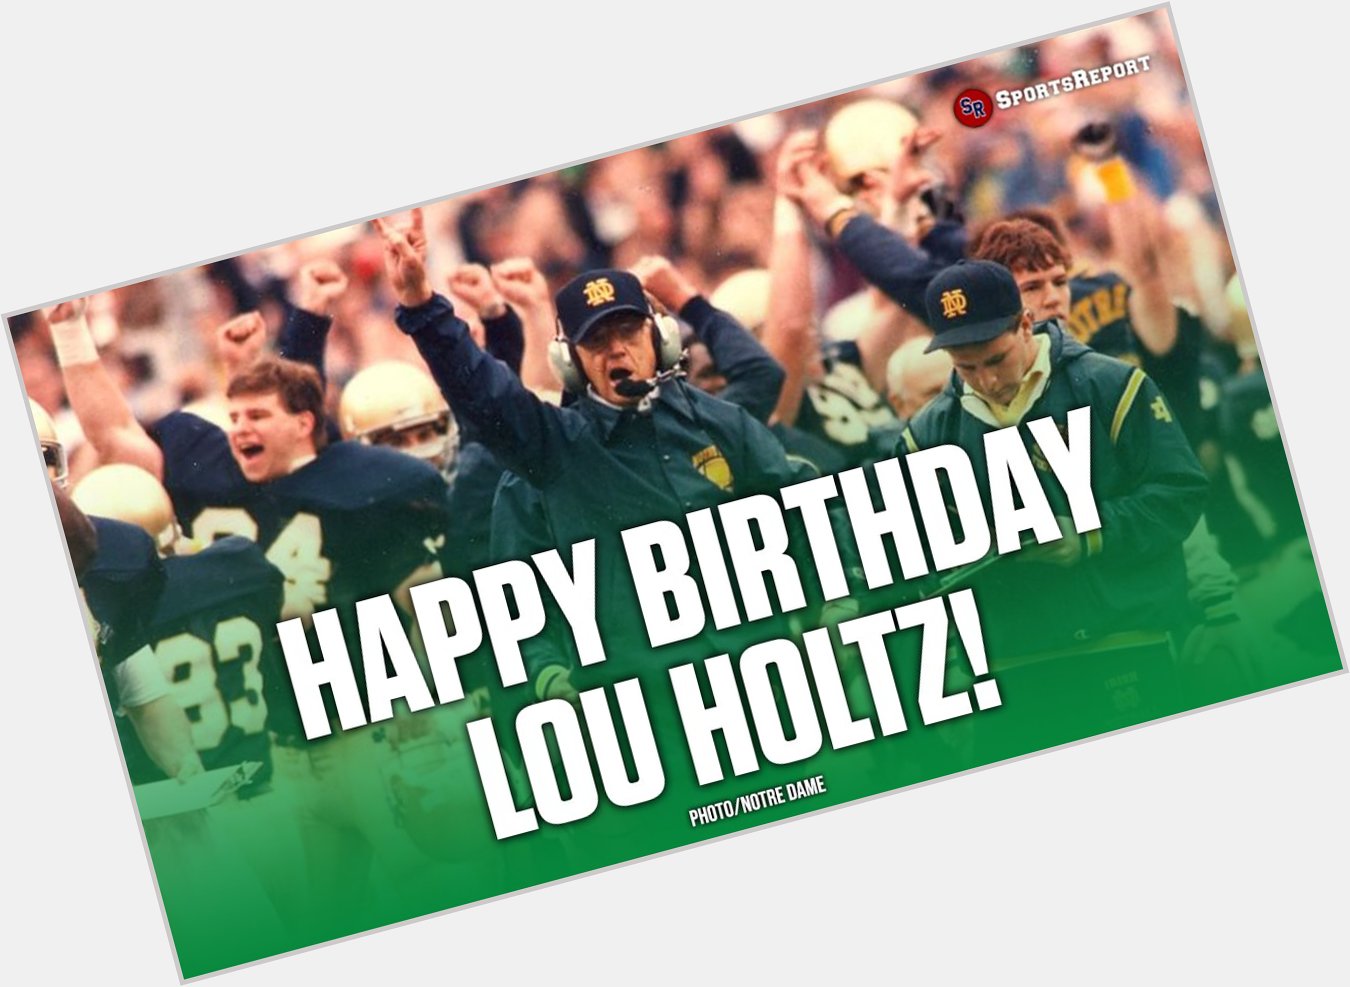  Fans, let\s wish Legend Coach Lou Holtz a Happy Birthday! 